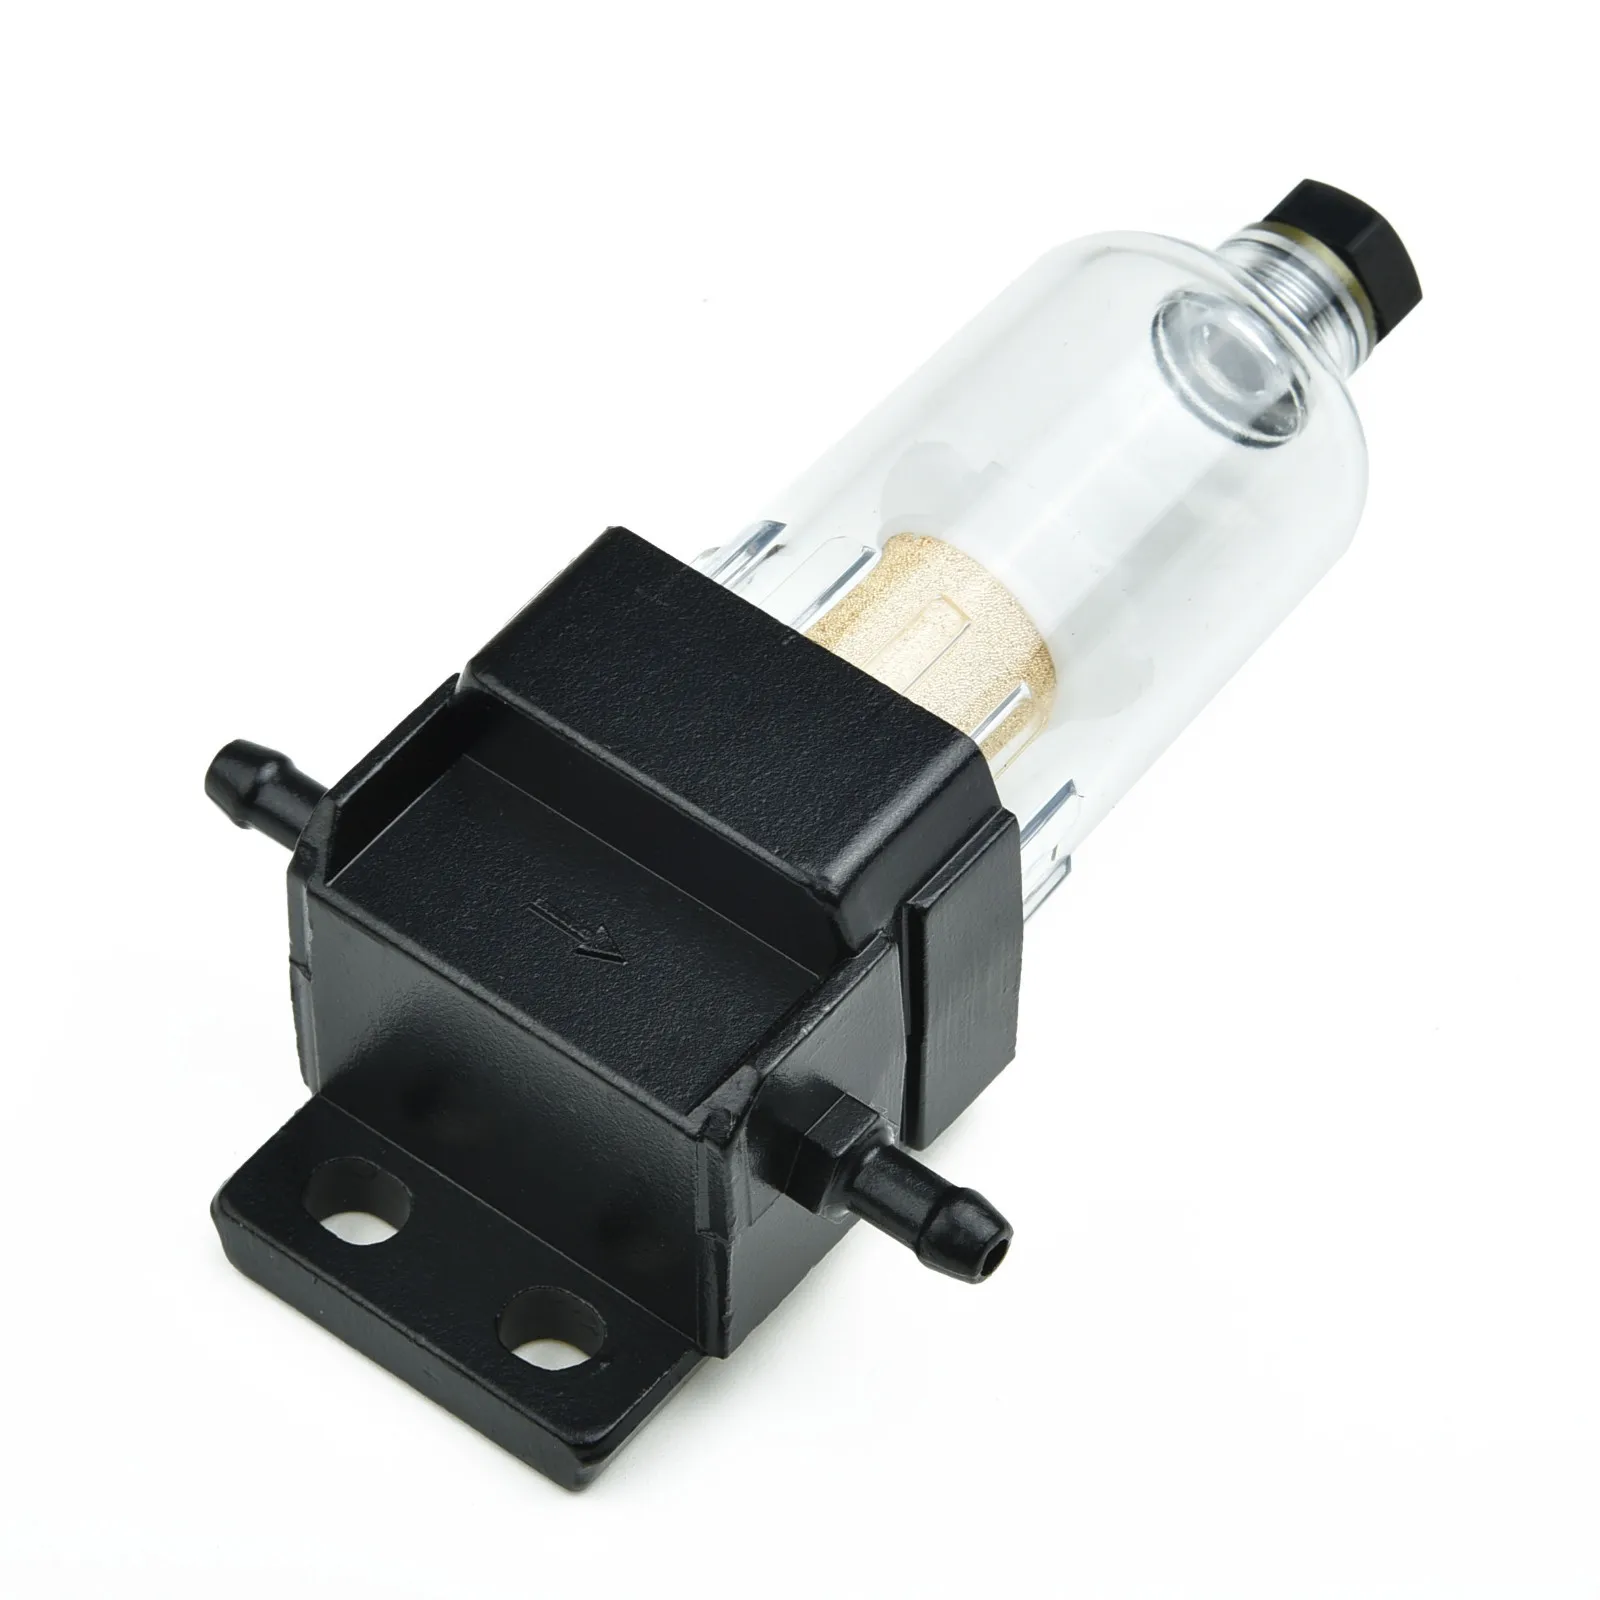 1 шт. Автомобильный топливный фильтр/Водоотделитель Комплект для Webasto Eberspacher 6 мм Высококачественный ABS Авто Аксессуары для замены автомобилей . ' - ' . 3